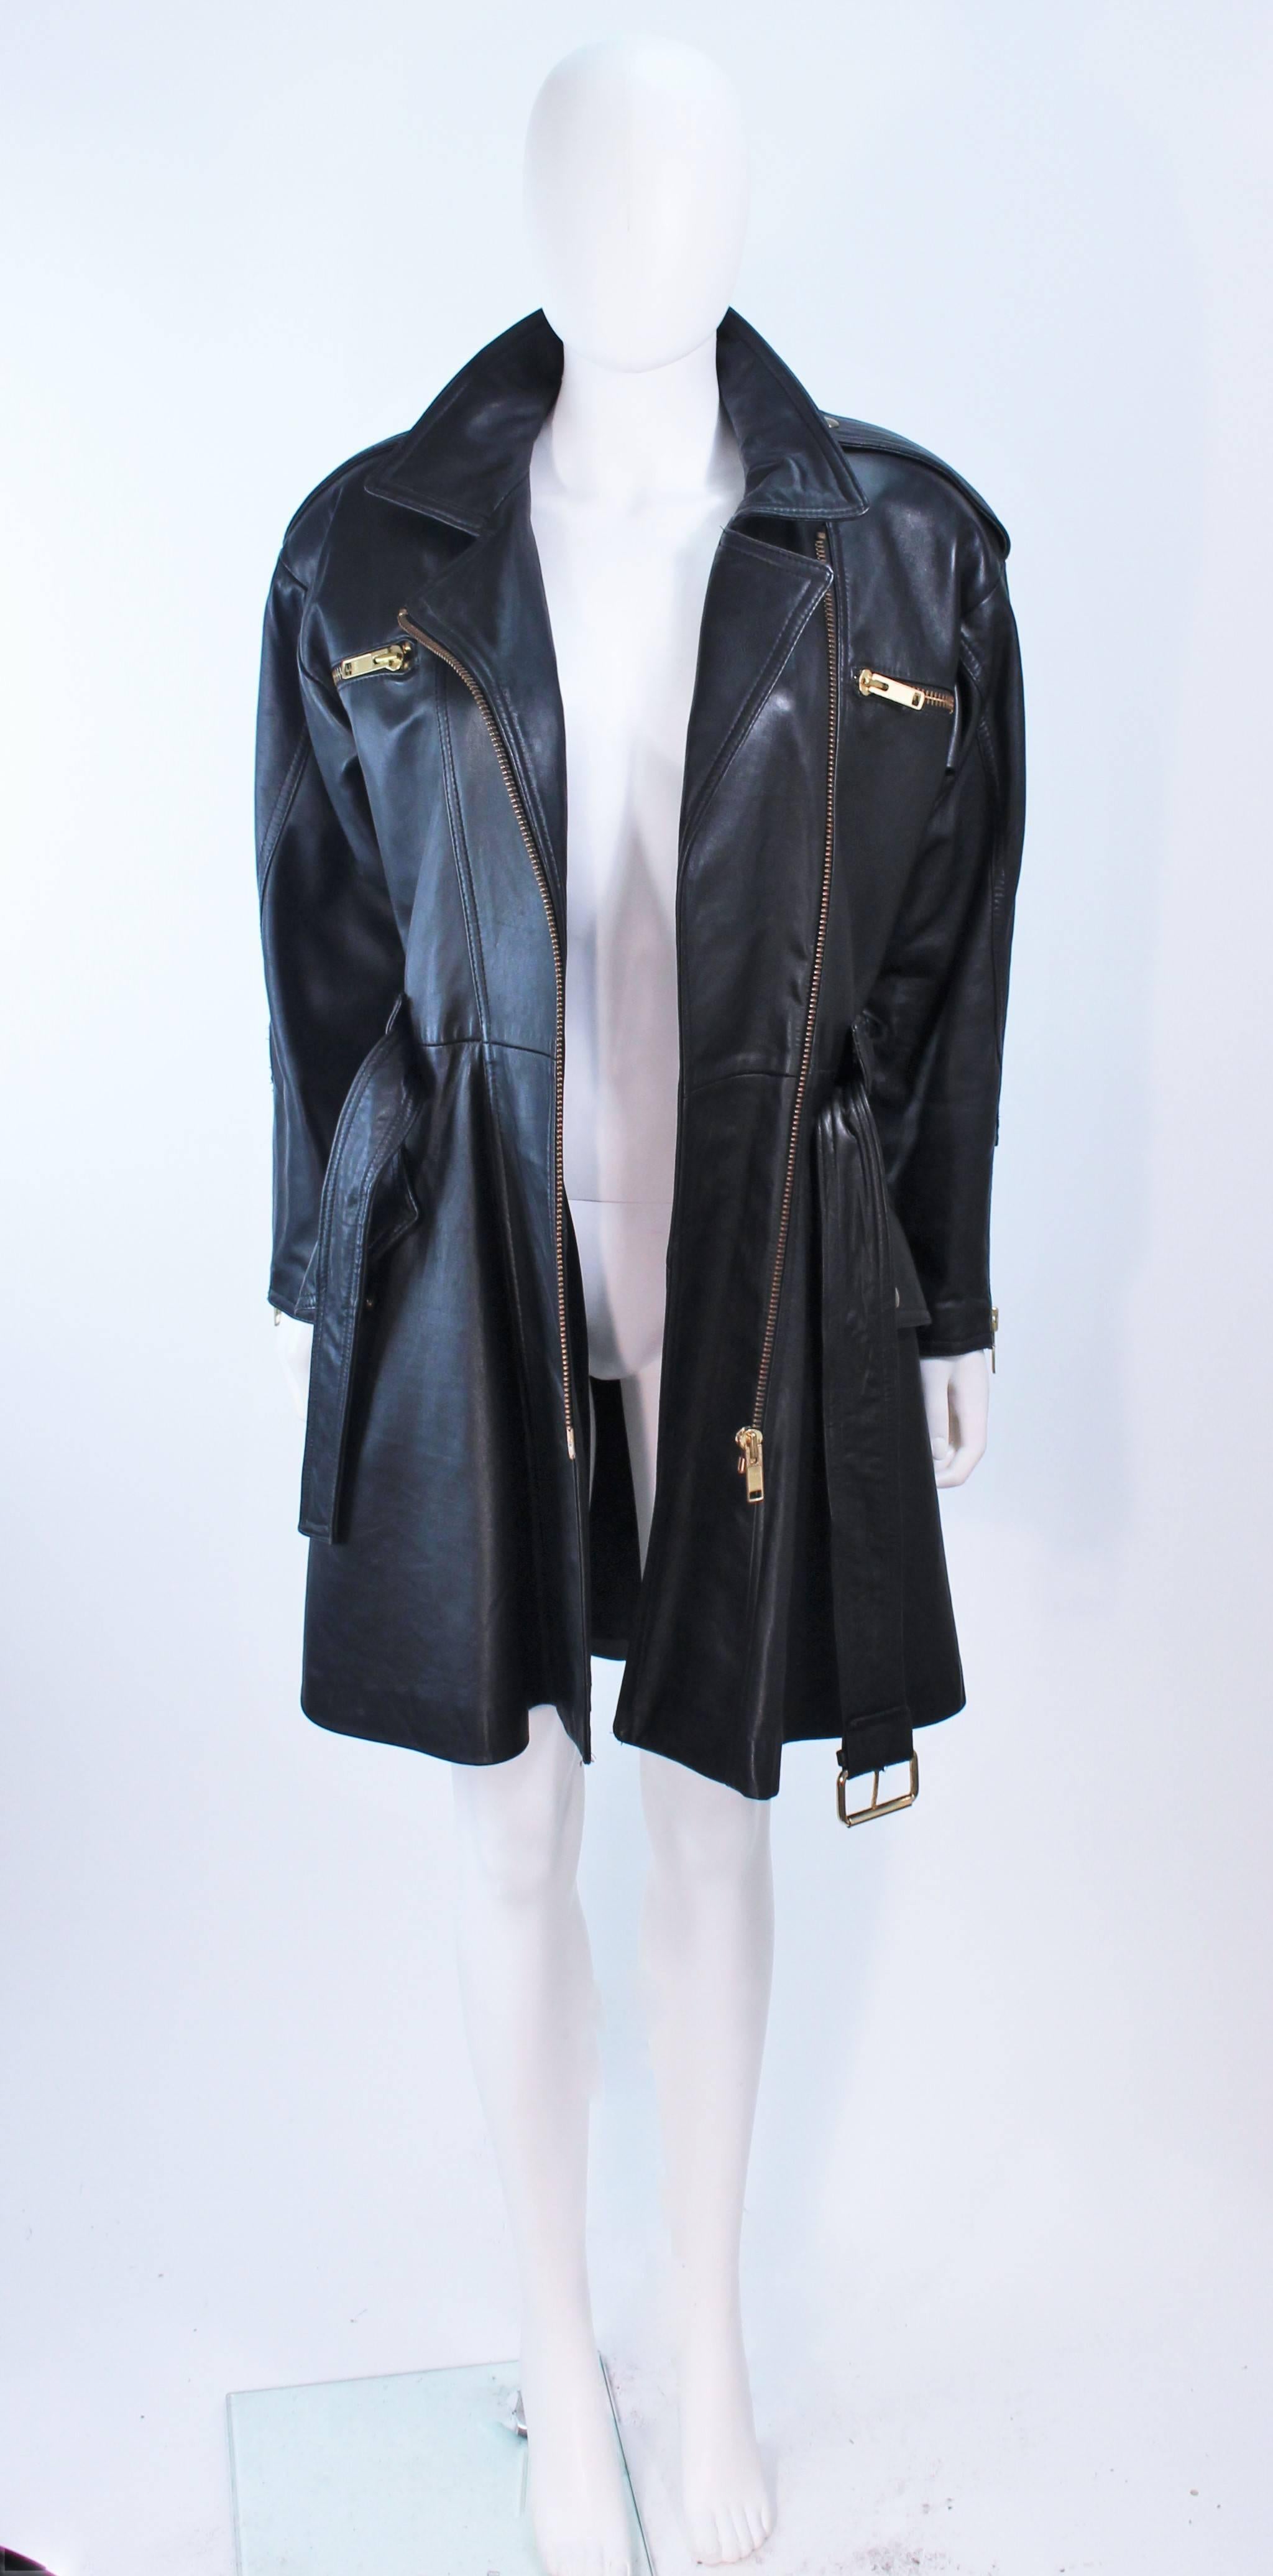 MARGRET GODFREY Black Leather Dress Coat with Zippers Size 8 10  5